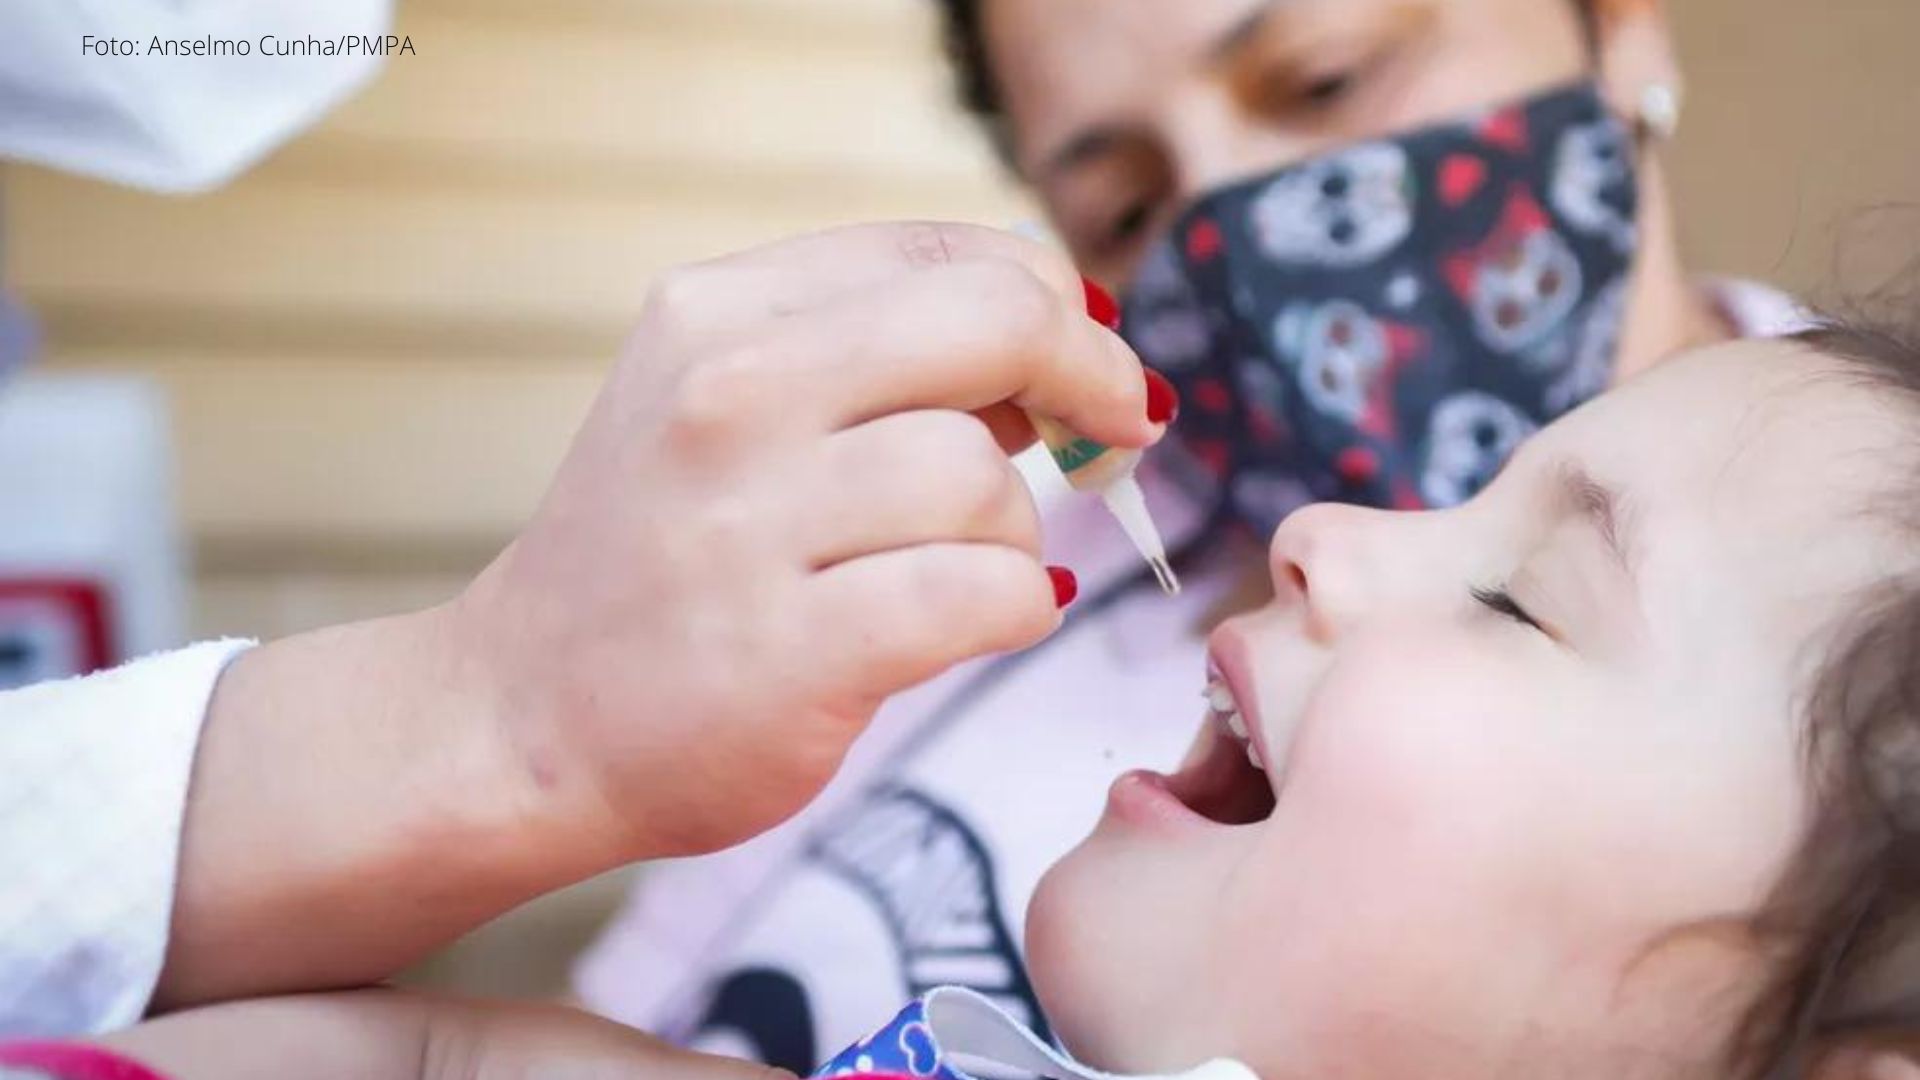 Longe da meta vacinal, Ouro Preto seguirá novo prazo para imunizar 95% das crianças